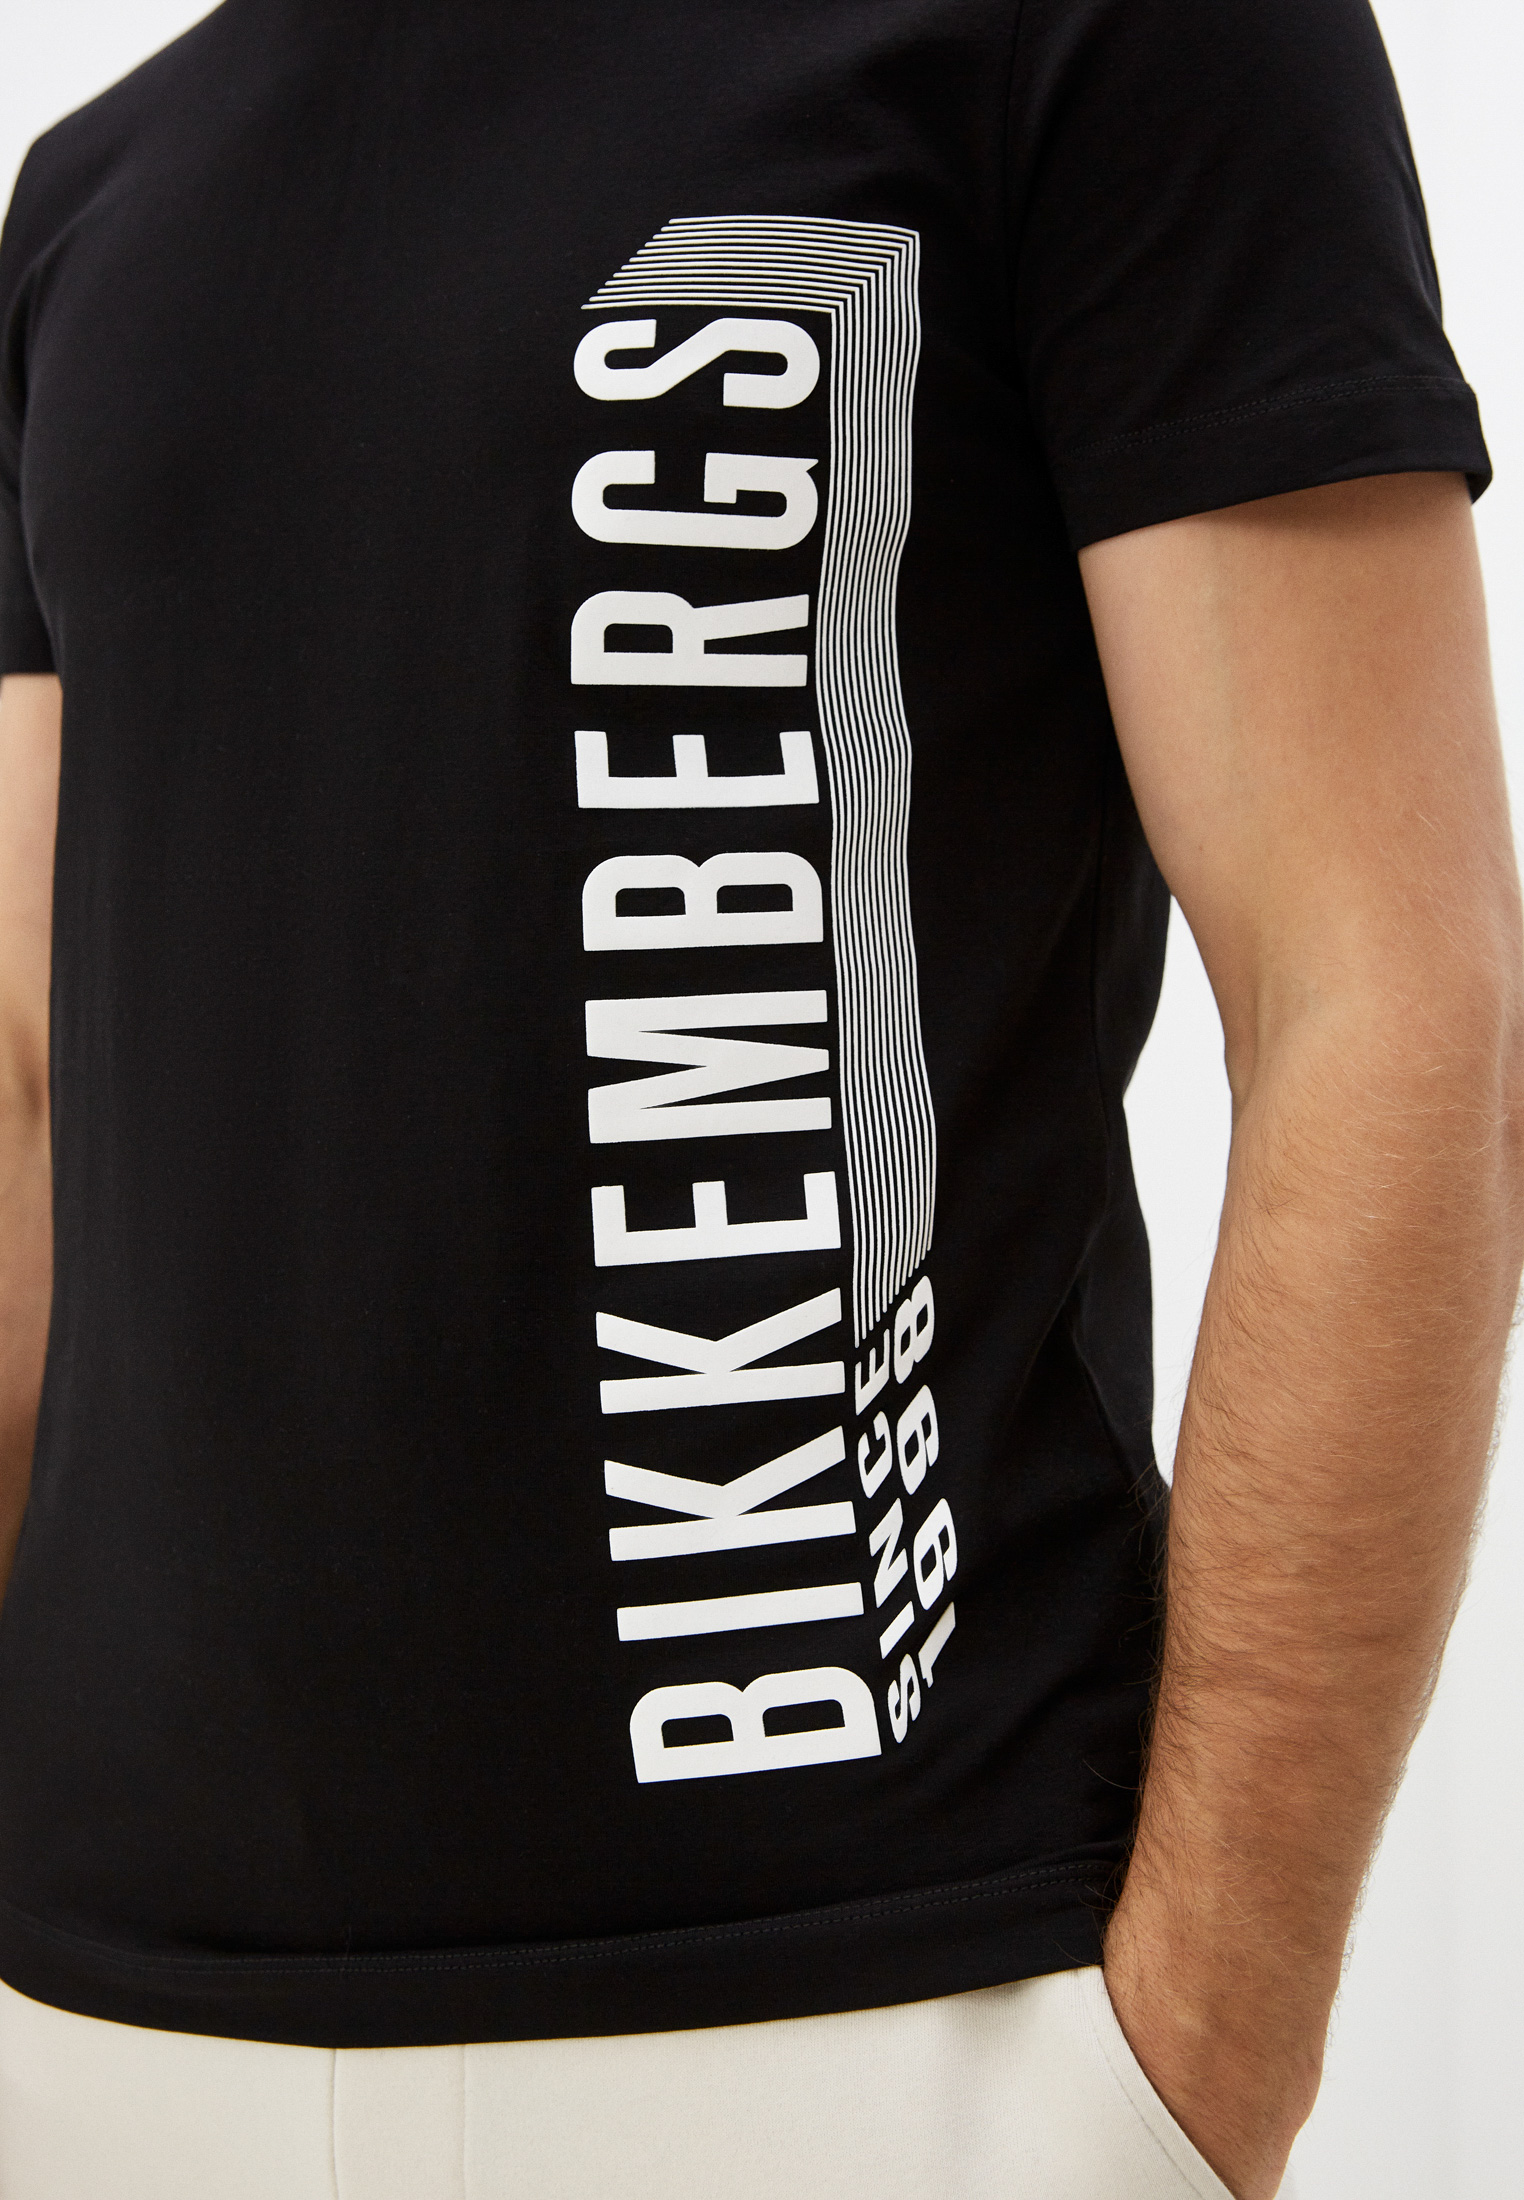 Мужская футболка Bikkembergs (Биккембергс) C 4 101 47 E 2296: изображение 5